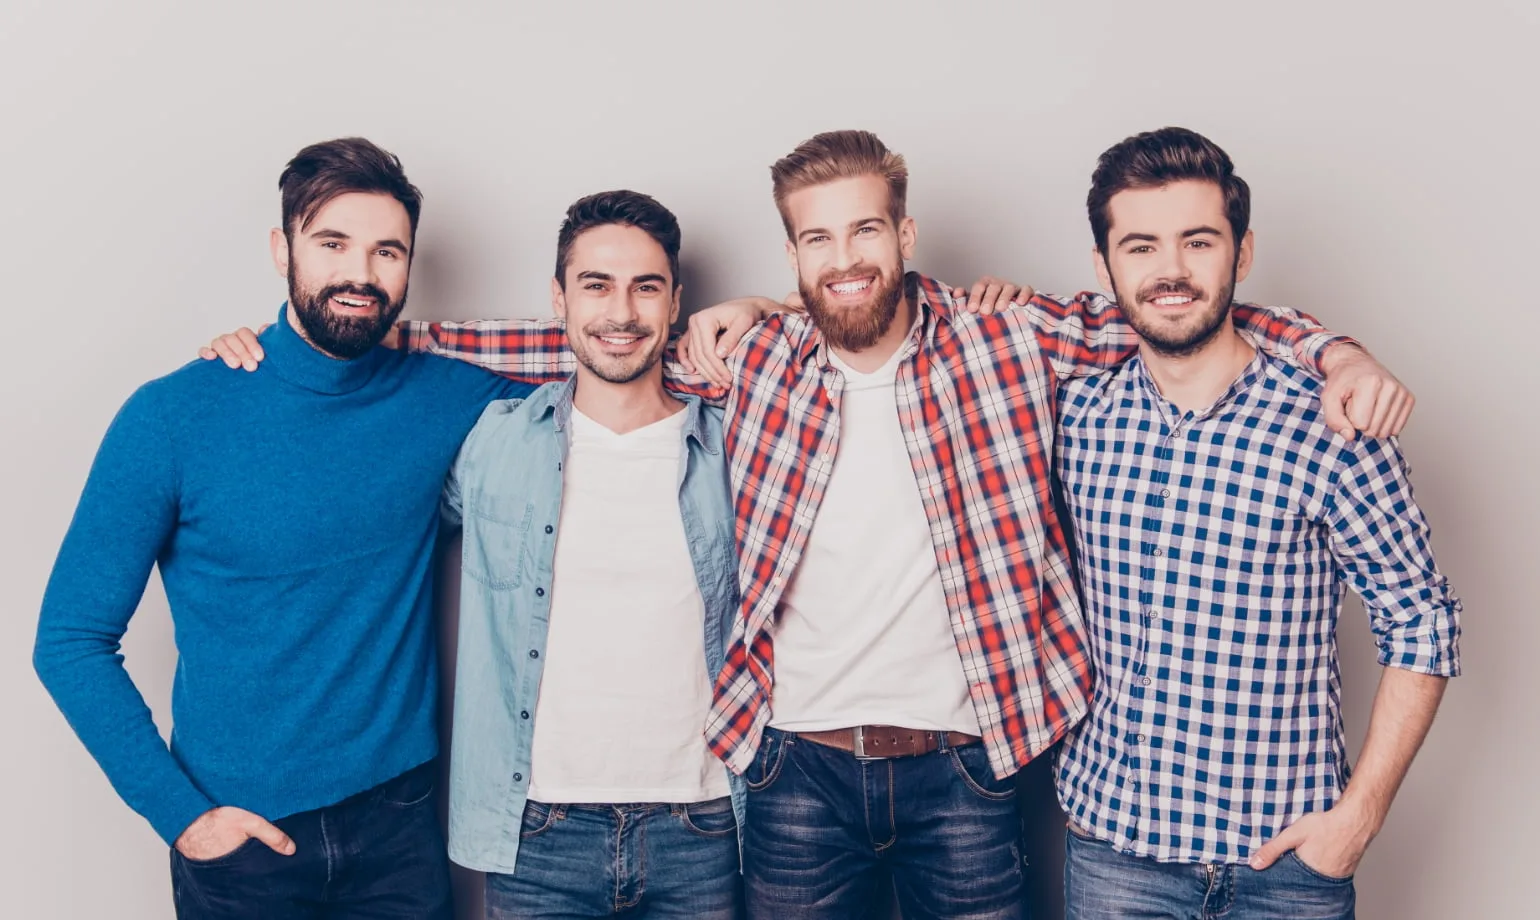 Hommes avec différents styles de barbe